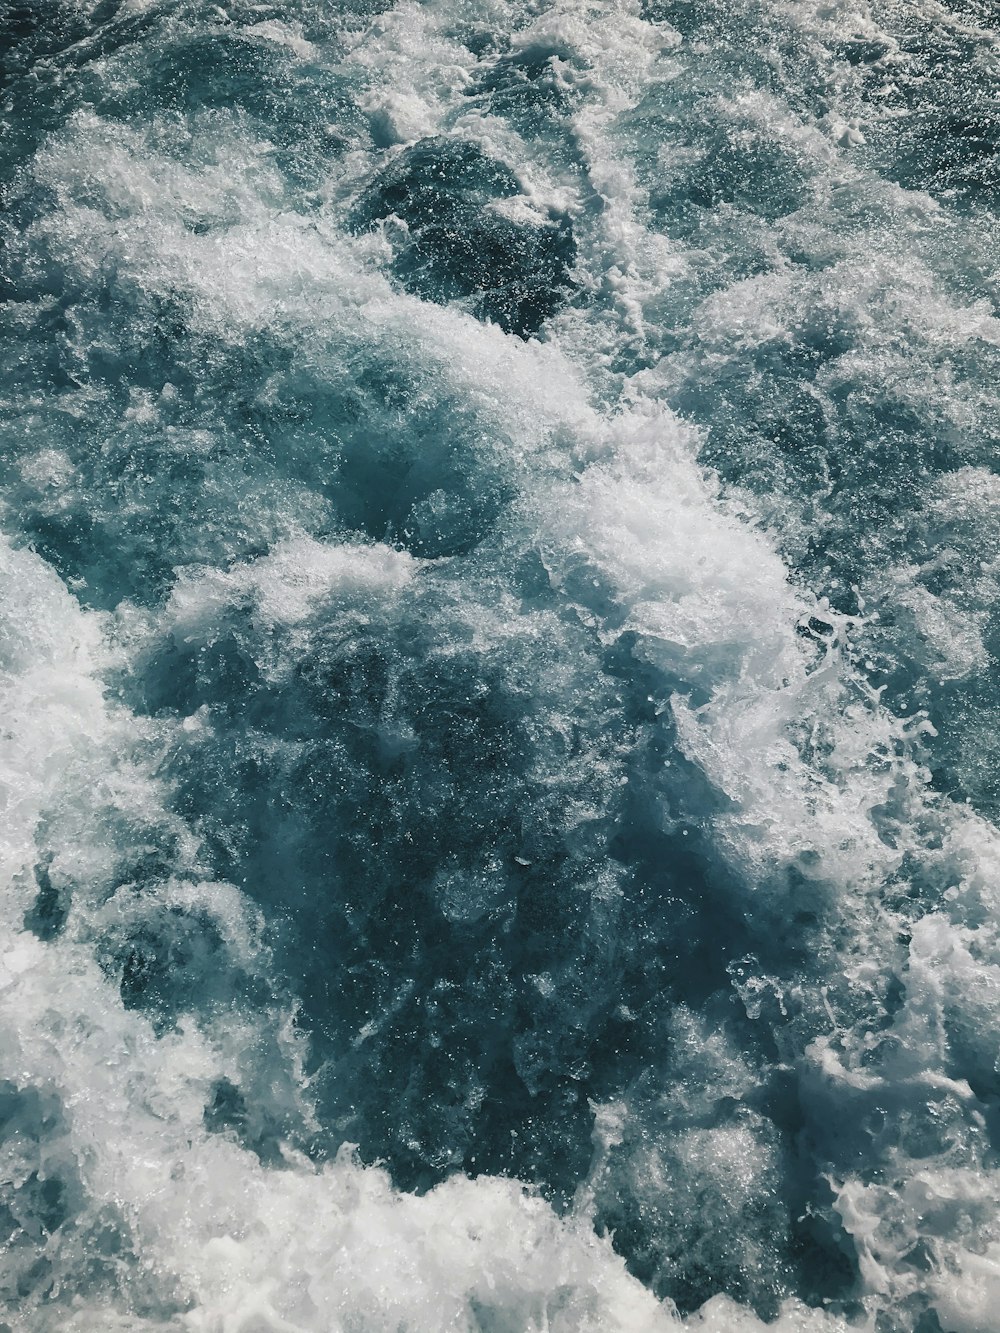 onde d'acqua nella fotografia ravvicinata